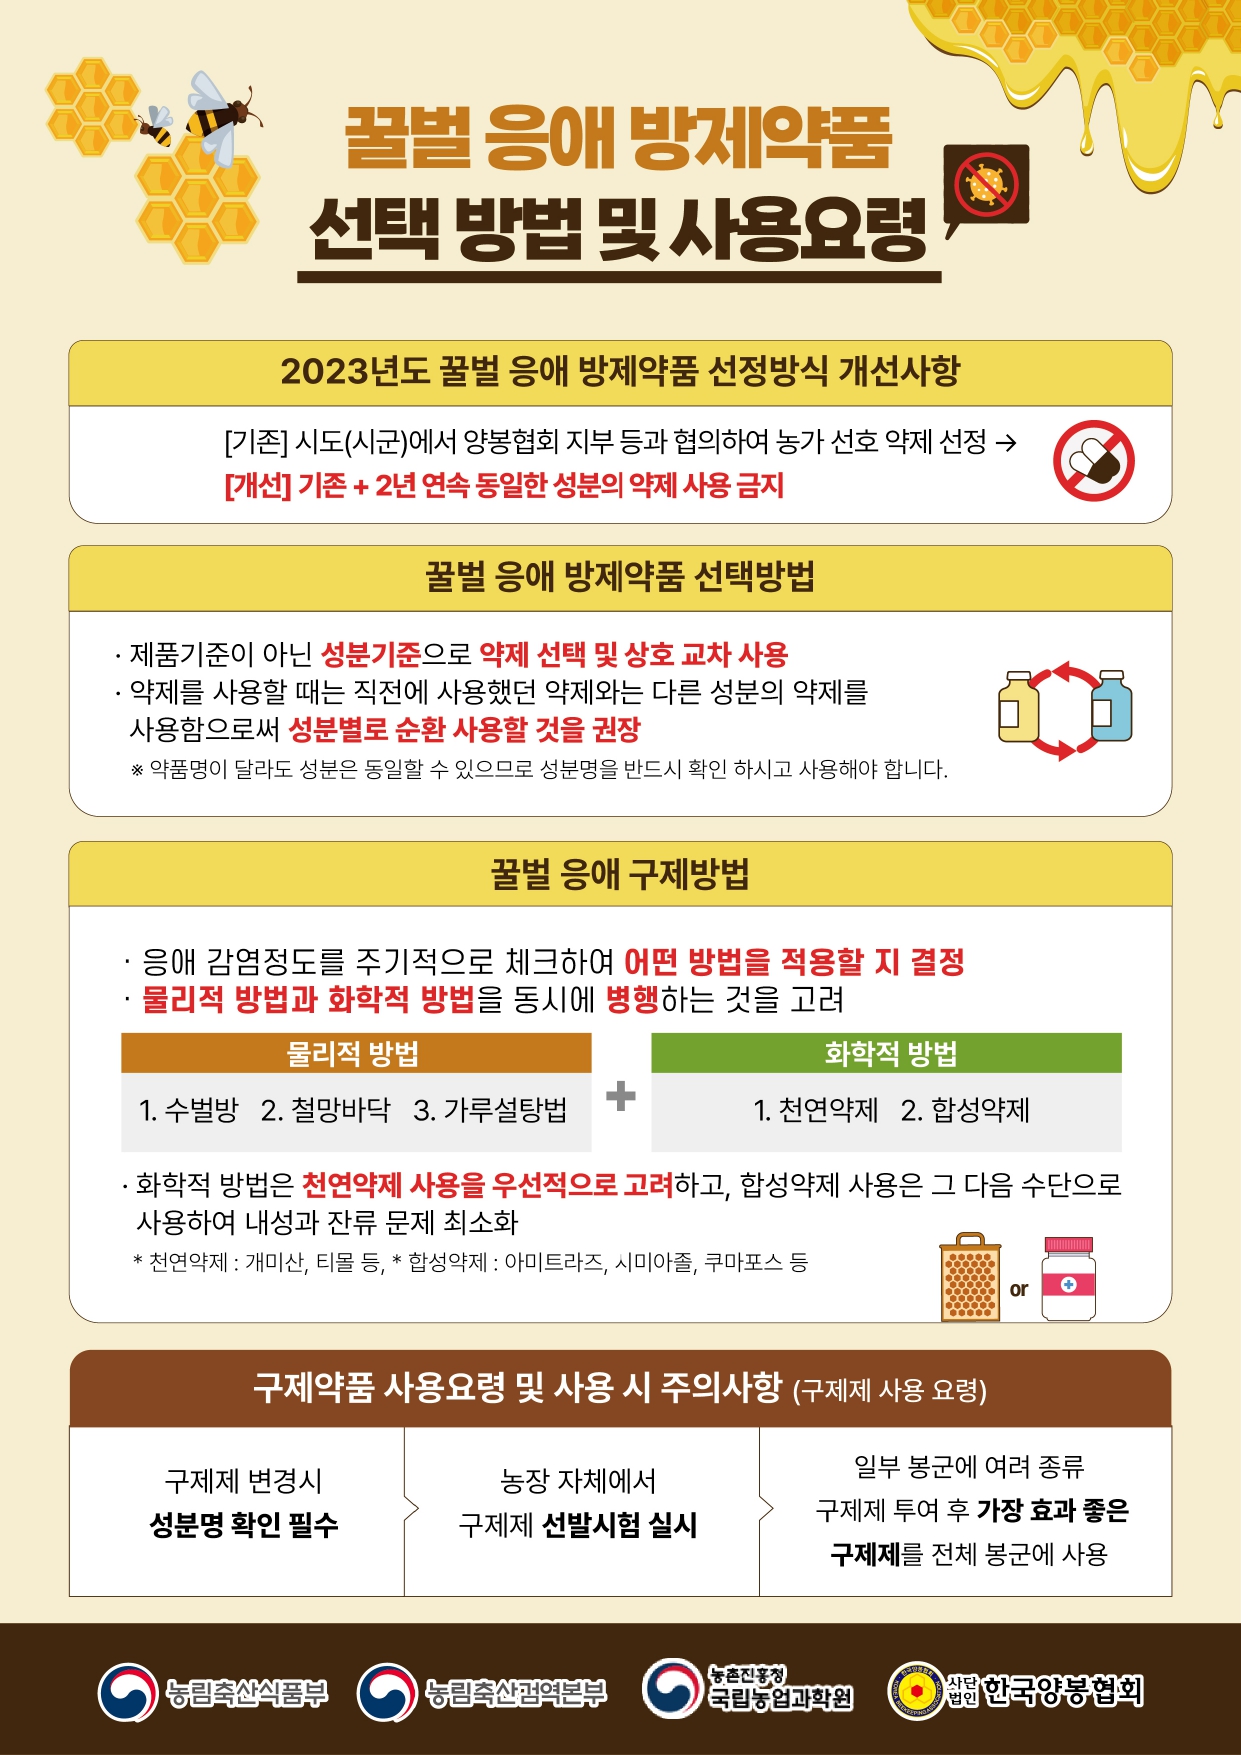 2023년 꿀법 응애 방제약품 선택 방법 및 사용 요령 안내 첨부#1